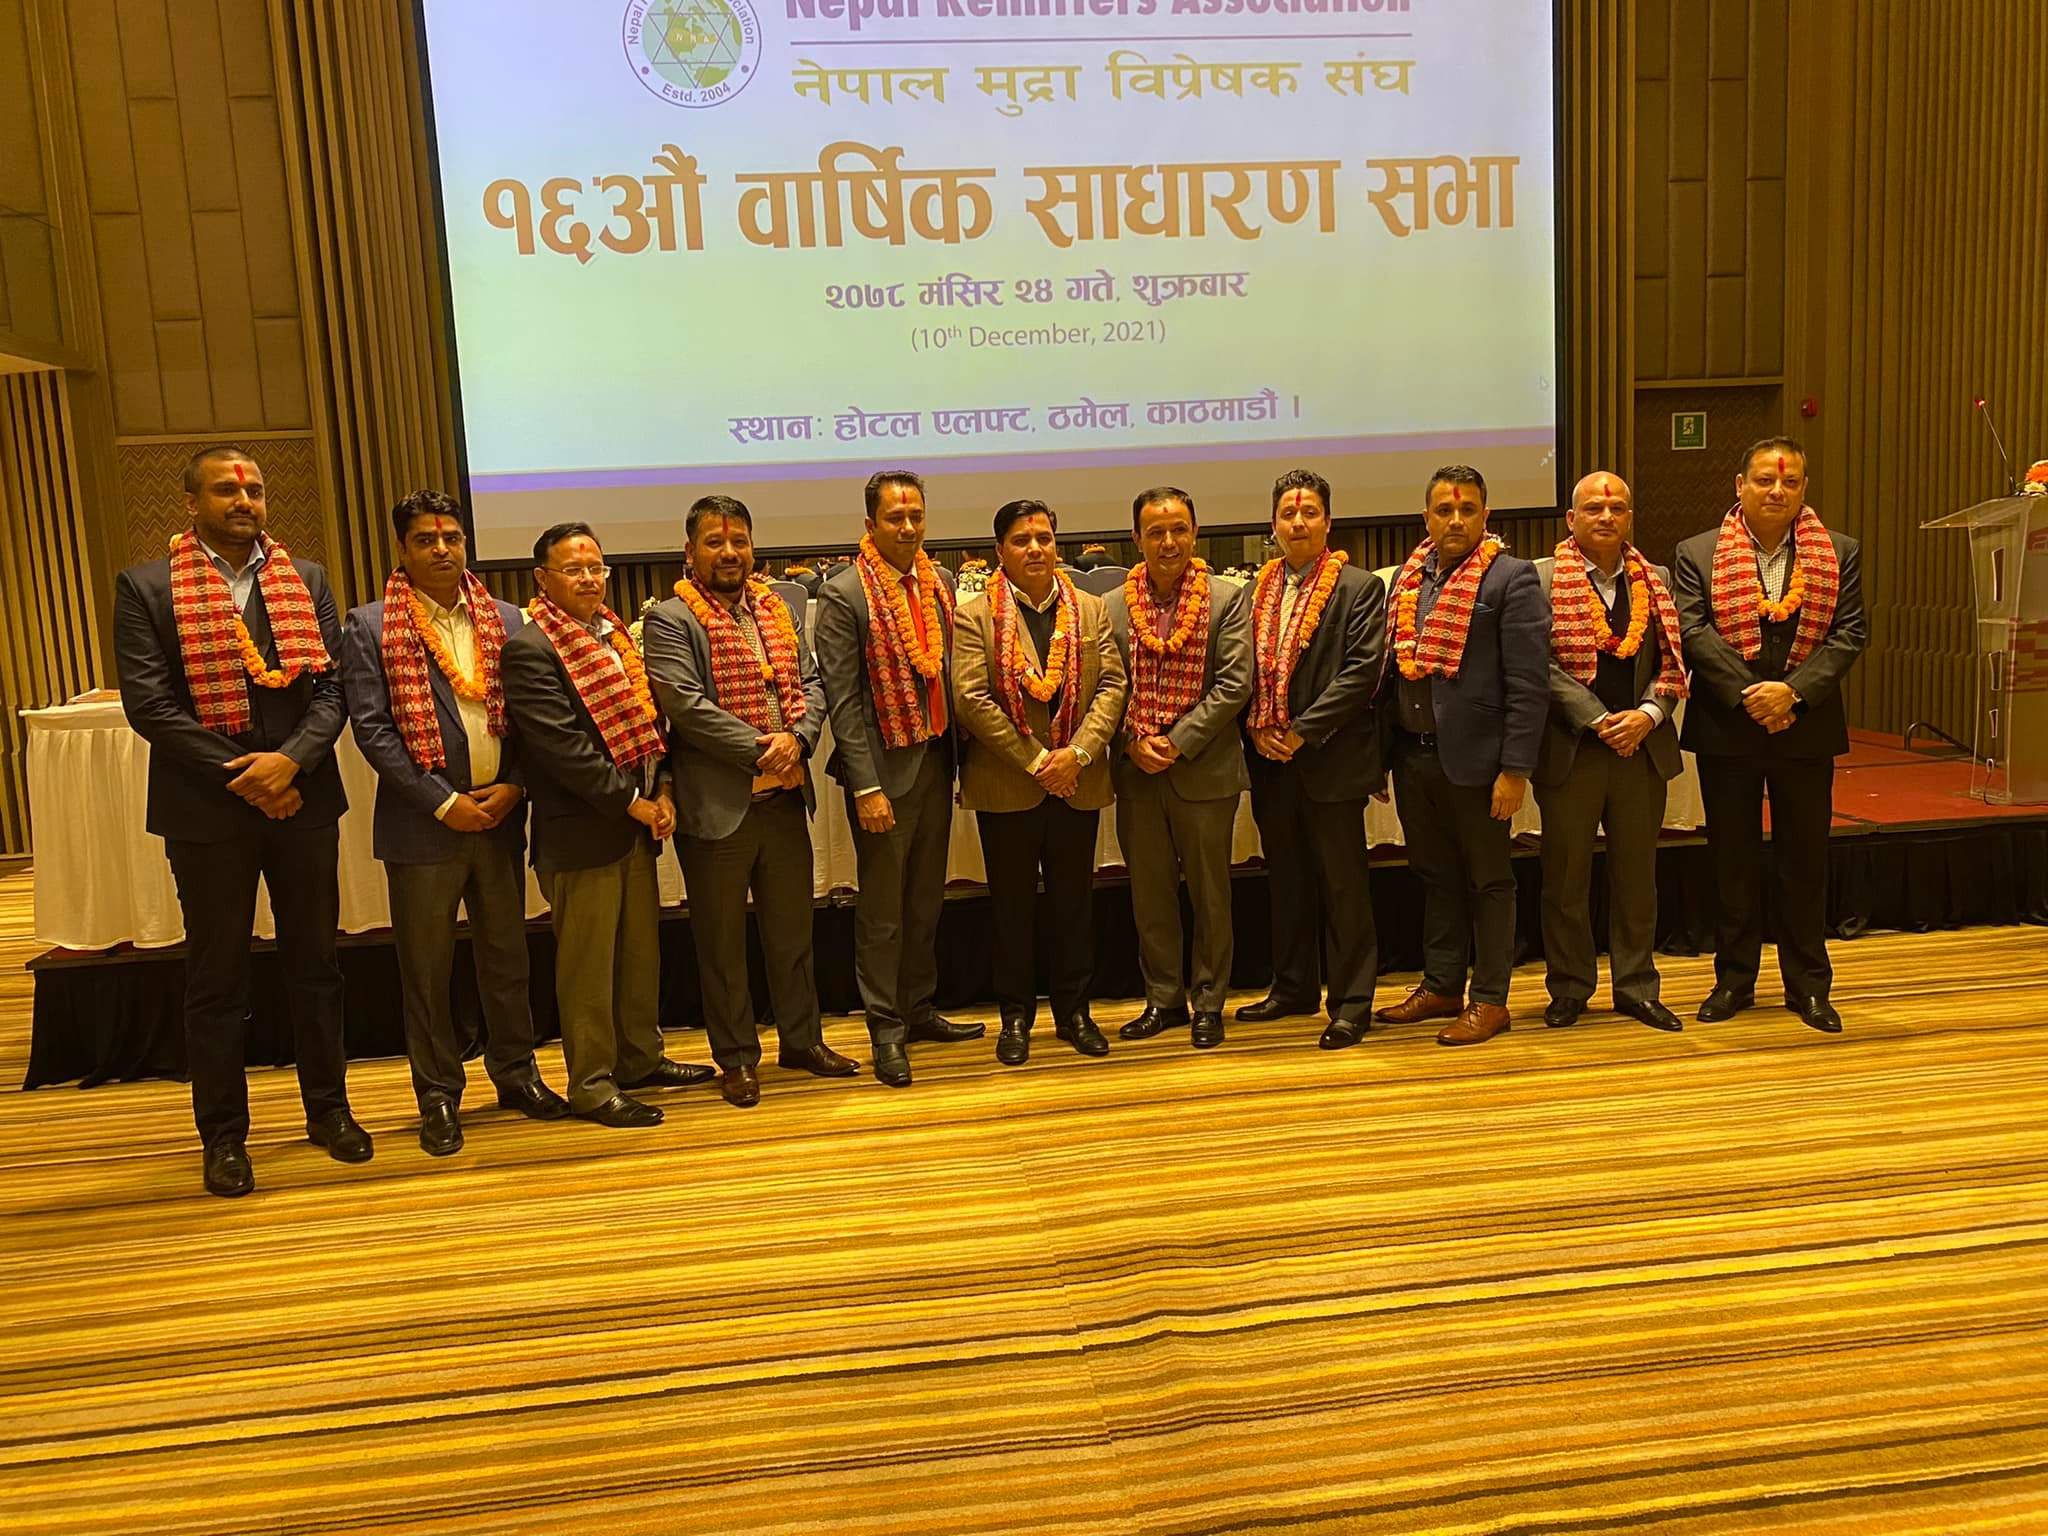 टण्डनको नेतृत्वमा नेपाल मुद्रा विप्रेषक सङ्घमा नयाँ कार्य समिति चयन